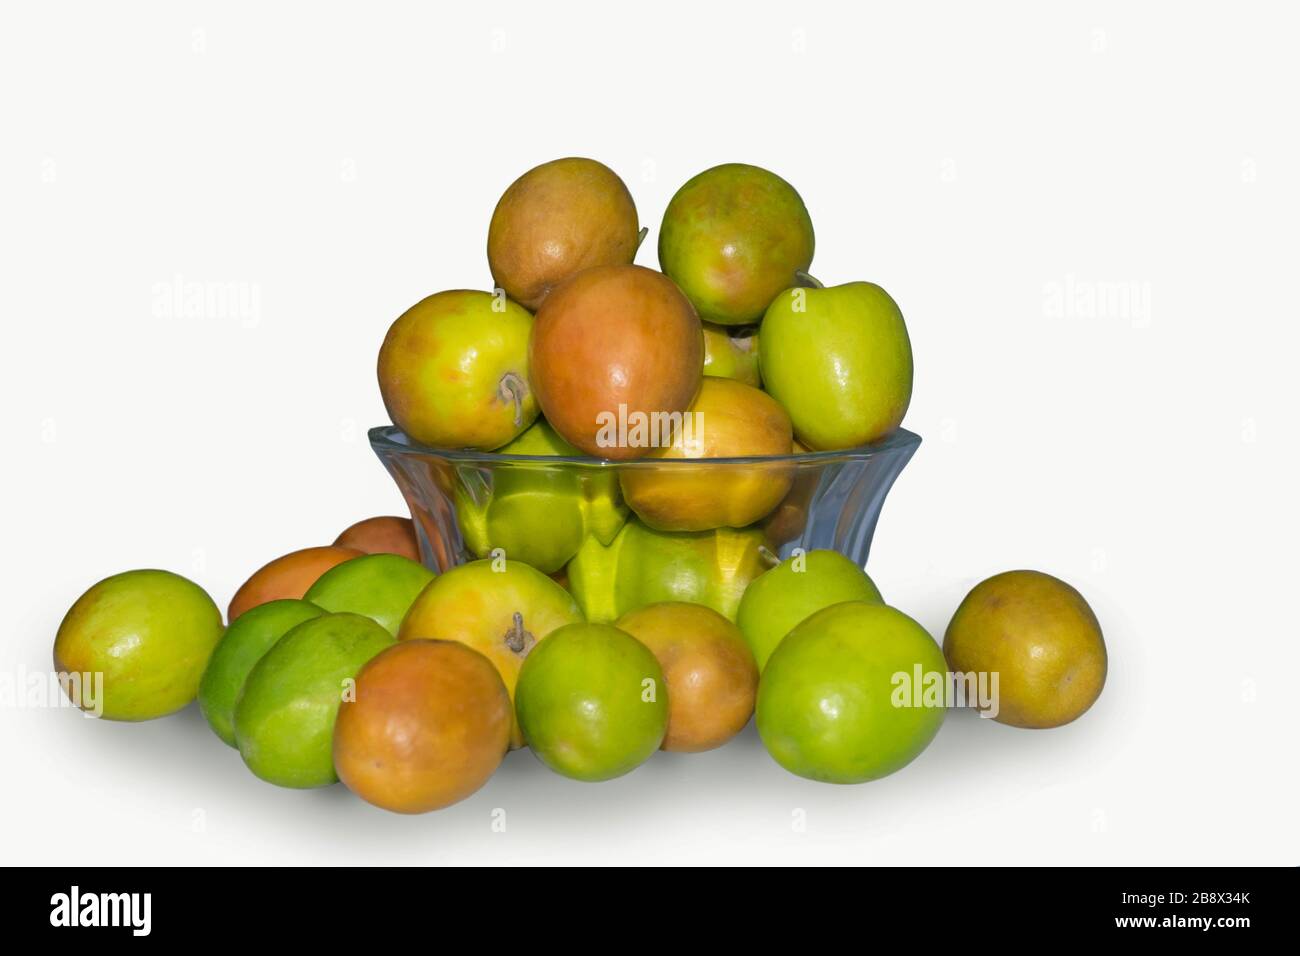 Nahaufnahme des Haufens der chinesischen Frucht Jujube, Ziziphus jujujuba in einer Schüssel auf weißem Hintergrund. Stockfoto